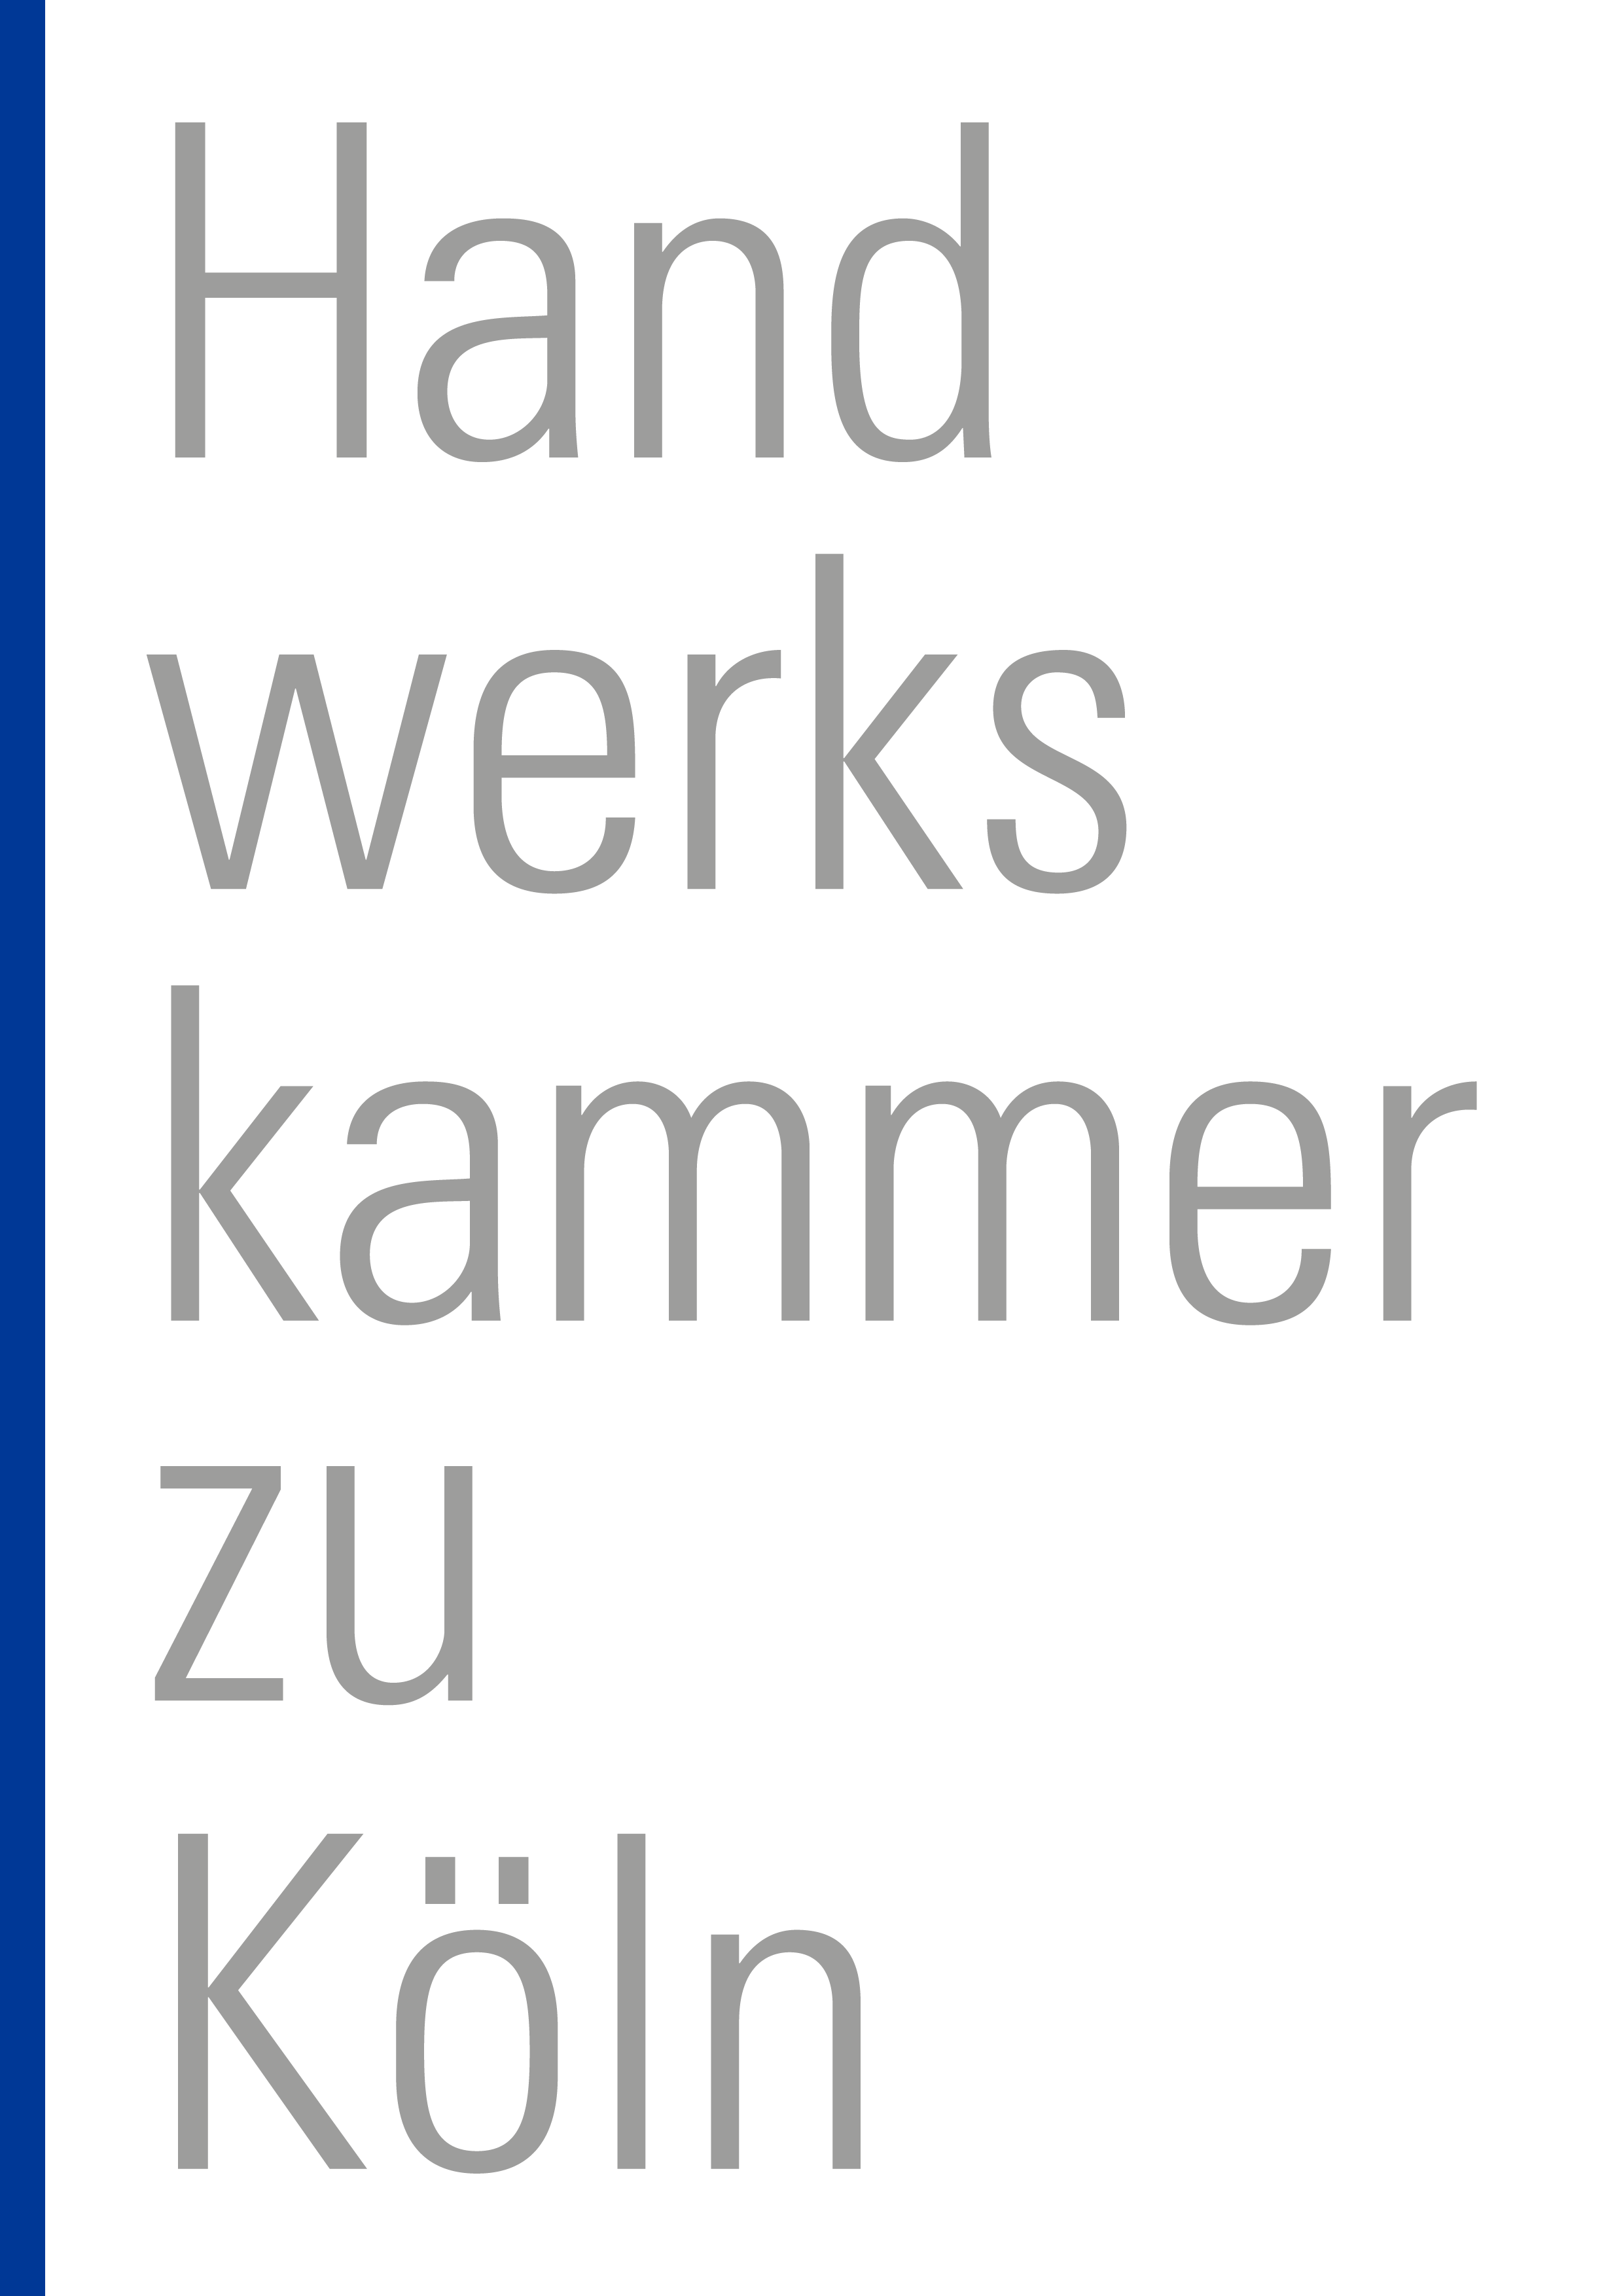 Handwerkskammer Schriftzug Grau Mit Blauem Balken 1.png